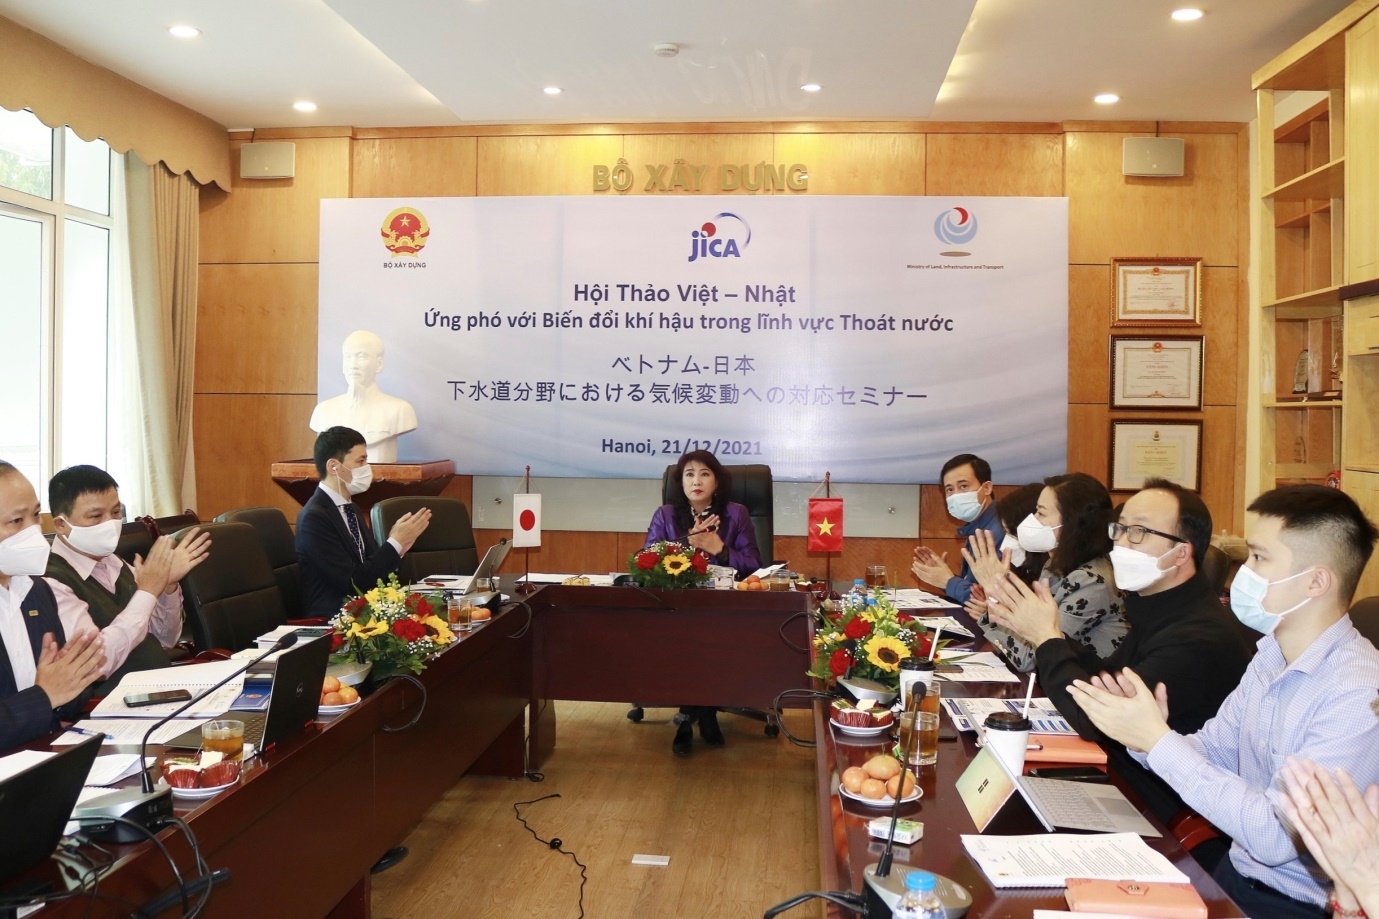 Hội thảo Việt - Nhật về ứng phó biến đổi khí hậu trong lĩnh vực thoát nước